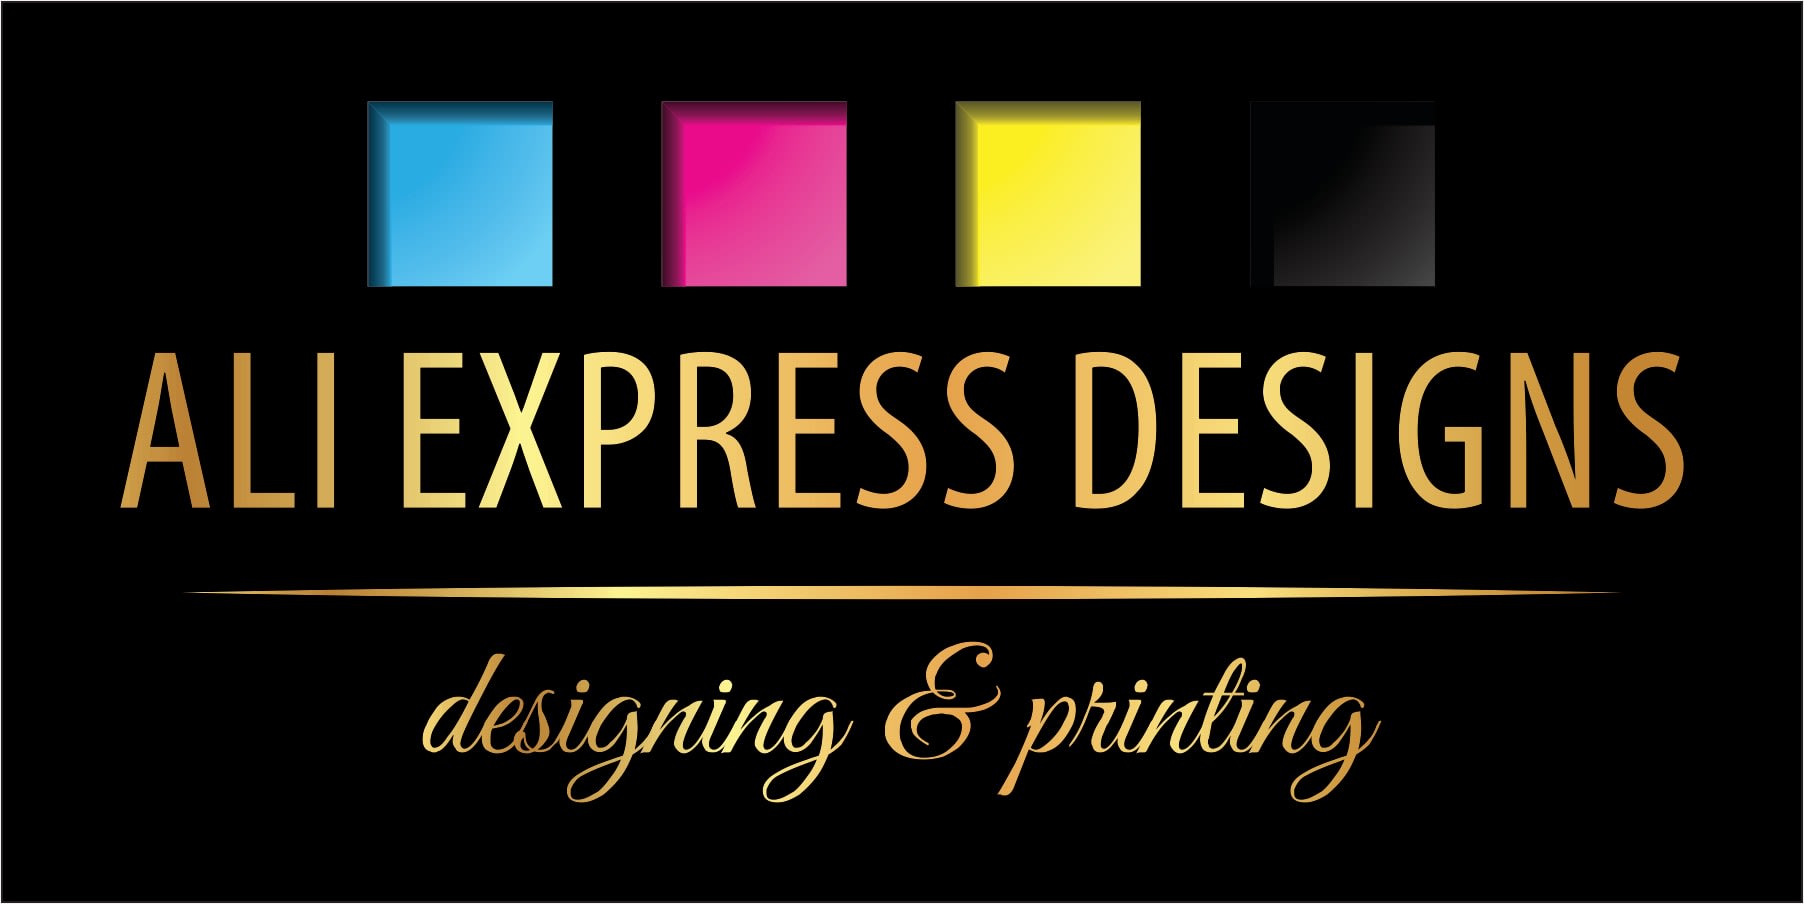 Printing & Designing